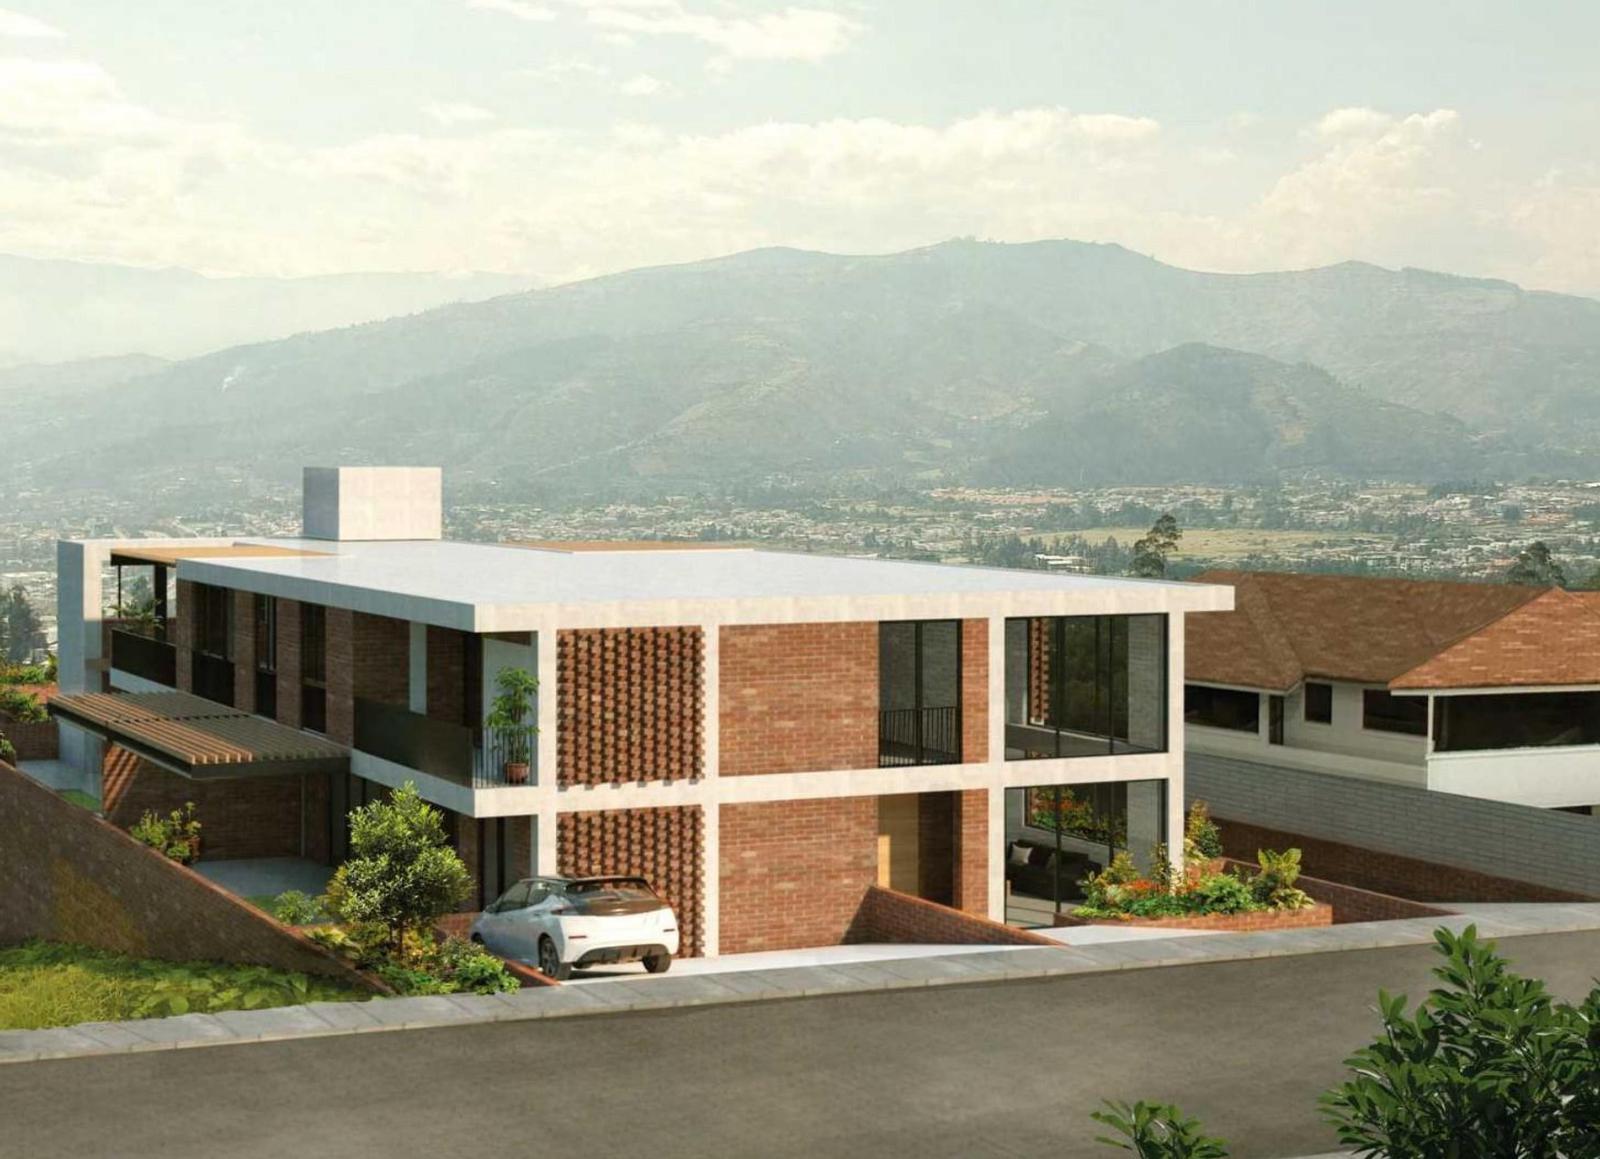 Vendo suite en proyecto con la mejor ubicación estratégica en el sector de Cumbayá